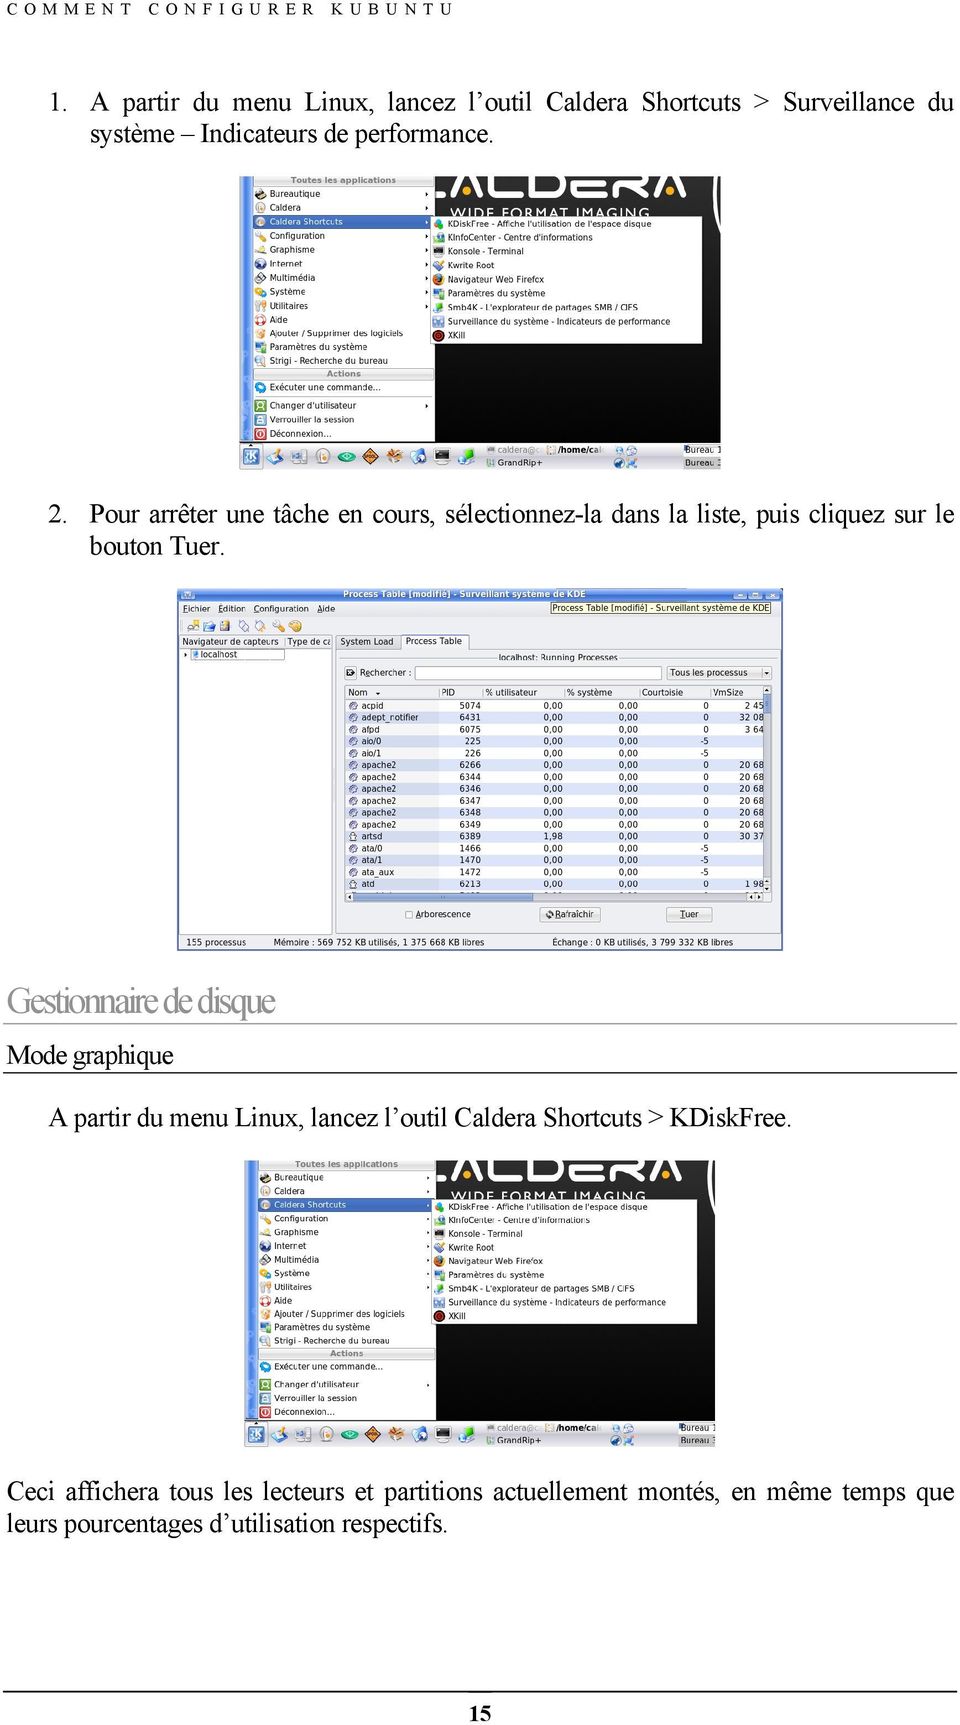 Gestionnaire de disque Mode graphique A partir du menu Linux, lancez l outil Caldera Shortcuts > KDiskFree.